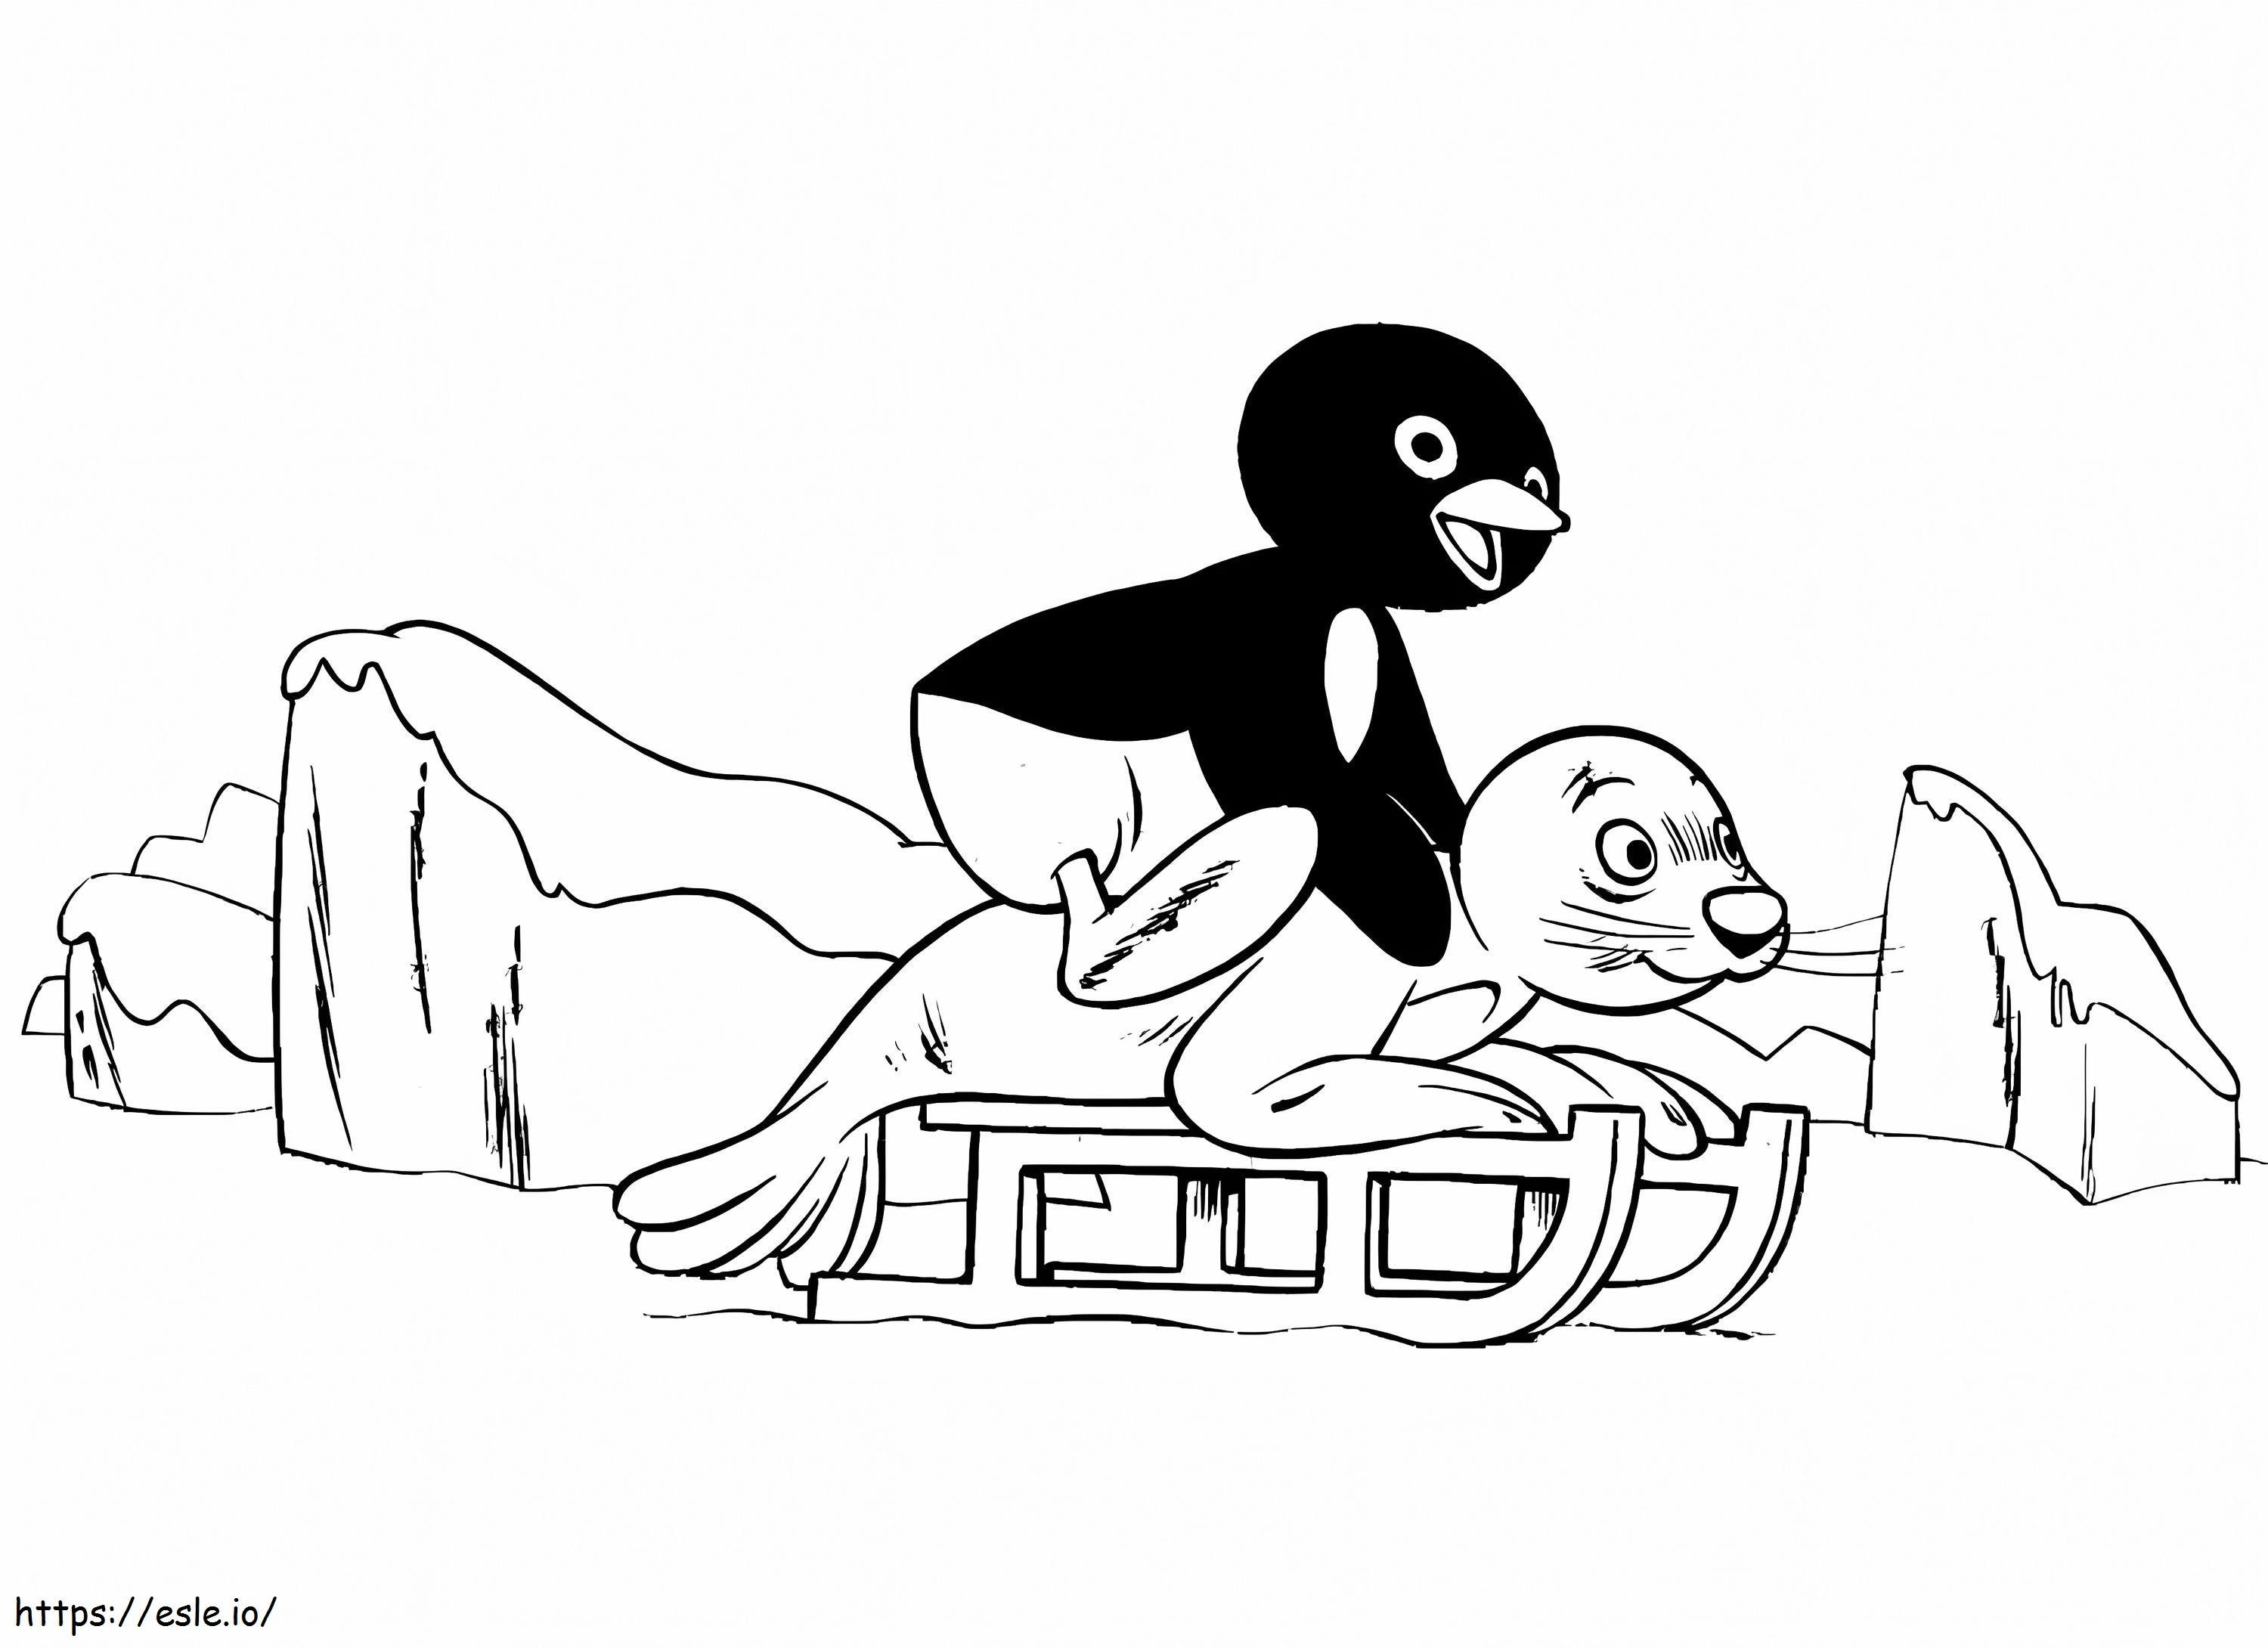 Pingu Having Fun coloring page